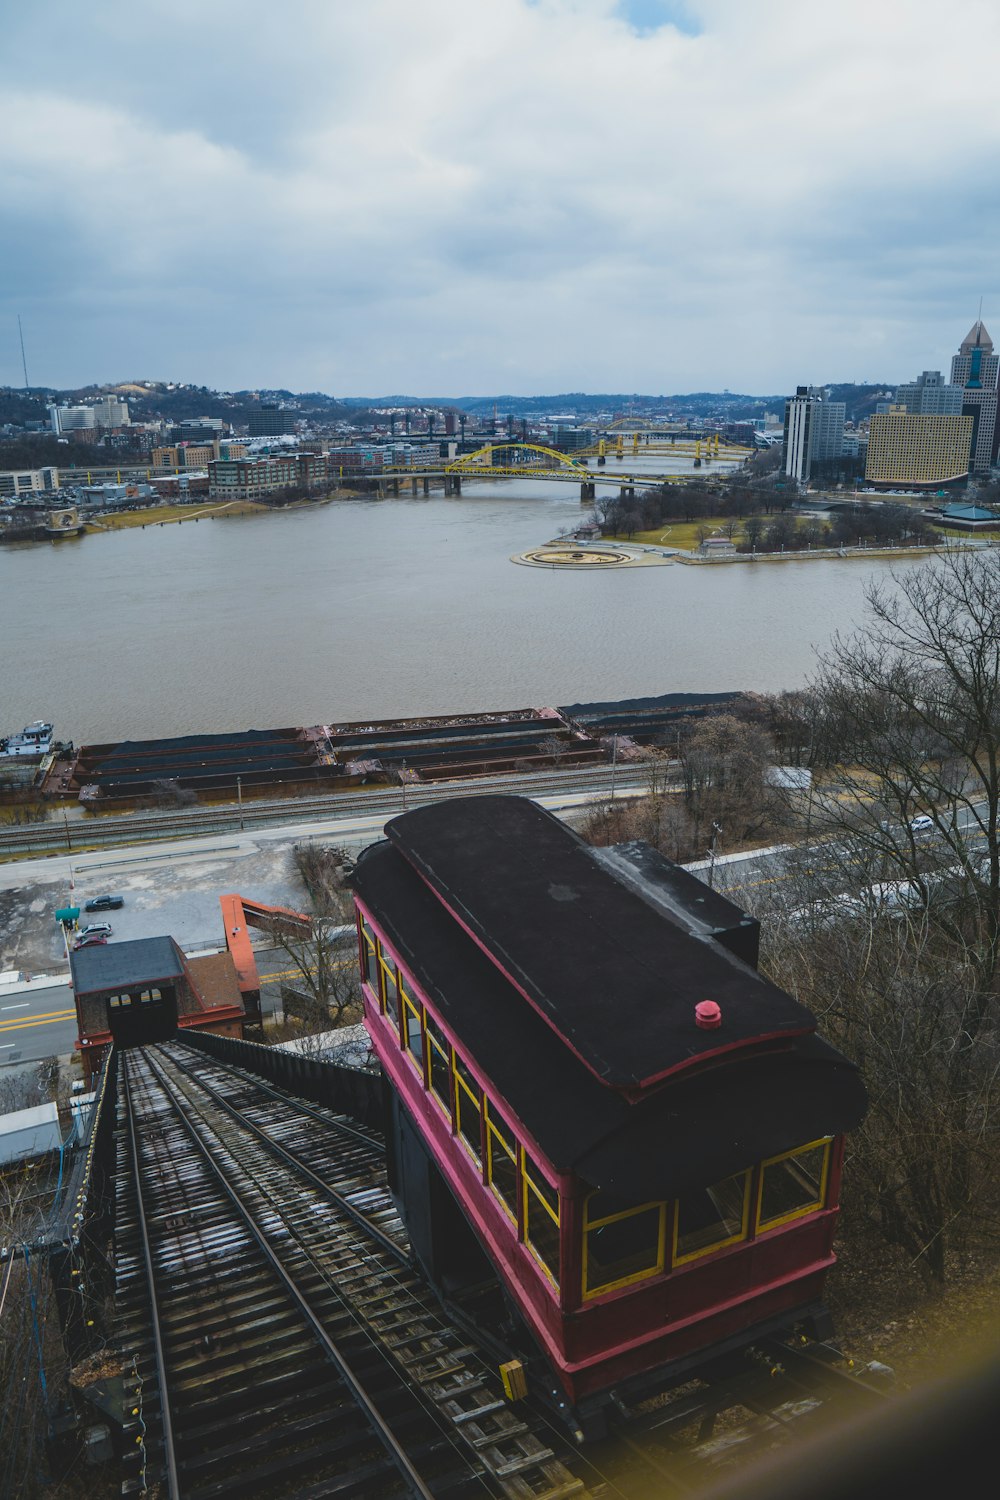 un train rouge et noir circulant sur les voies ferrées au bord d’une rivière